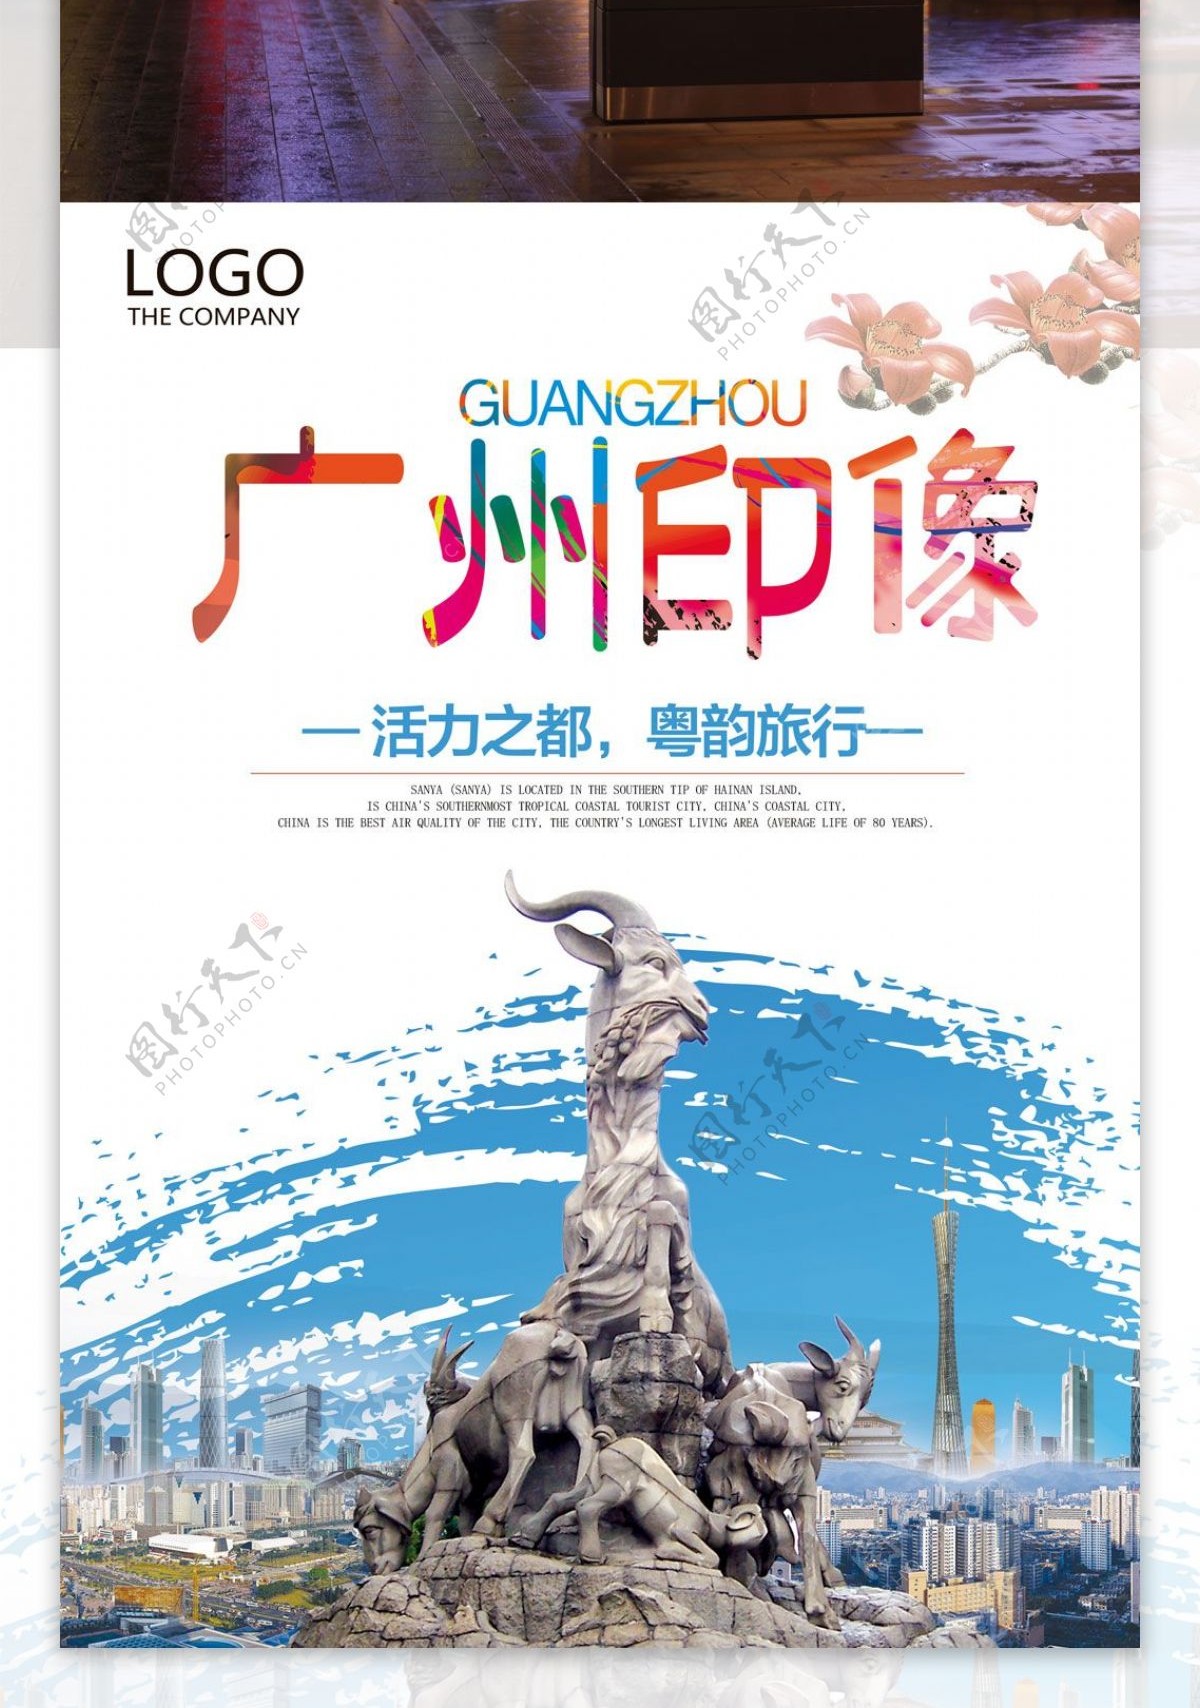 广州旅行社宣传海报